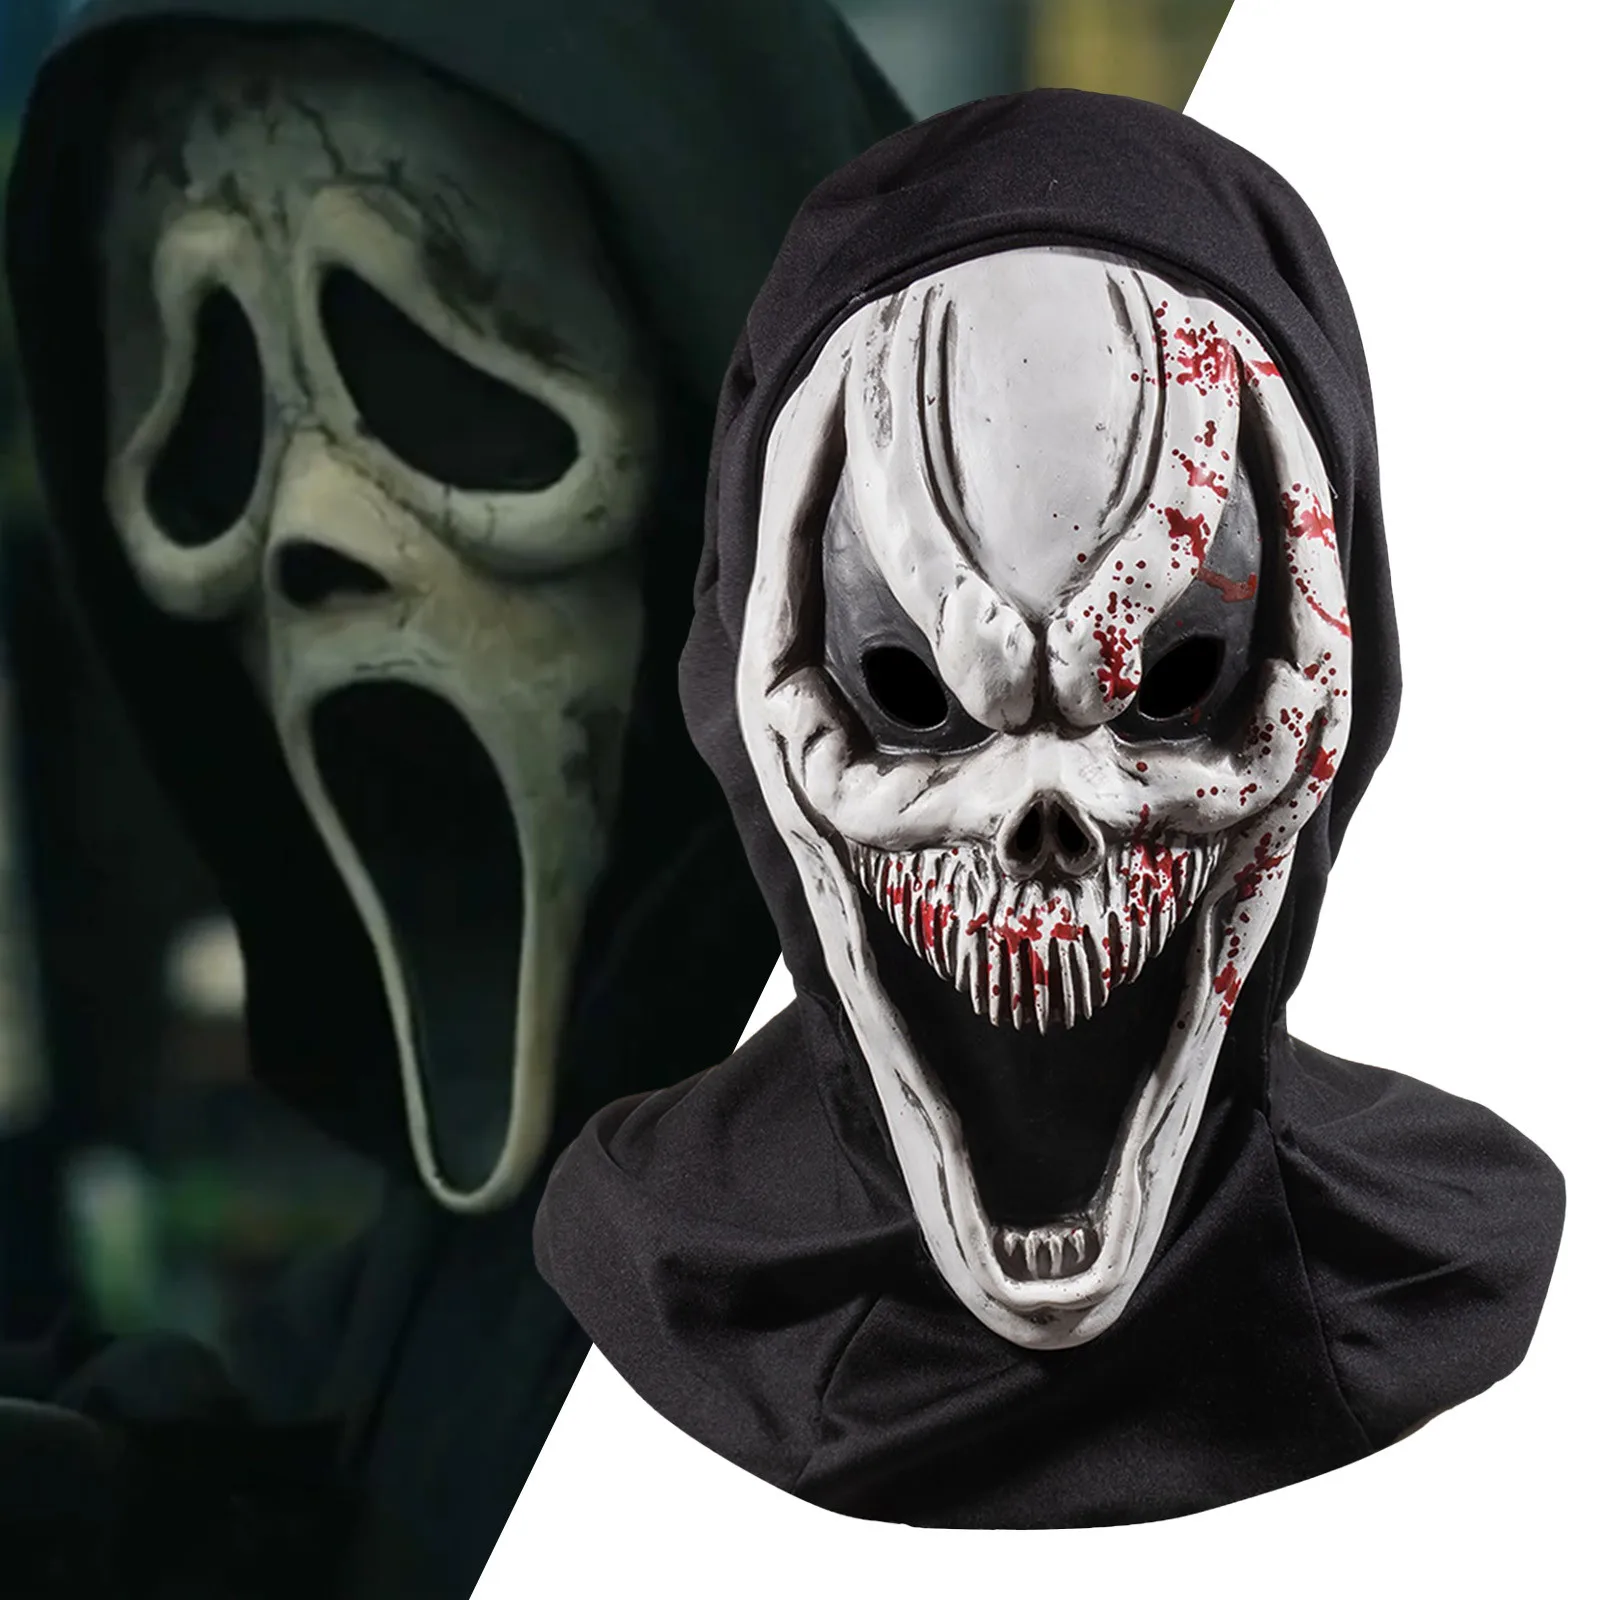 

Страшный крик лицо призрака дом Маска Косплей страшное убийца зло демон маски Хэллоуин карвинальное платье вечеринка костюм реквизит